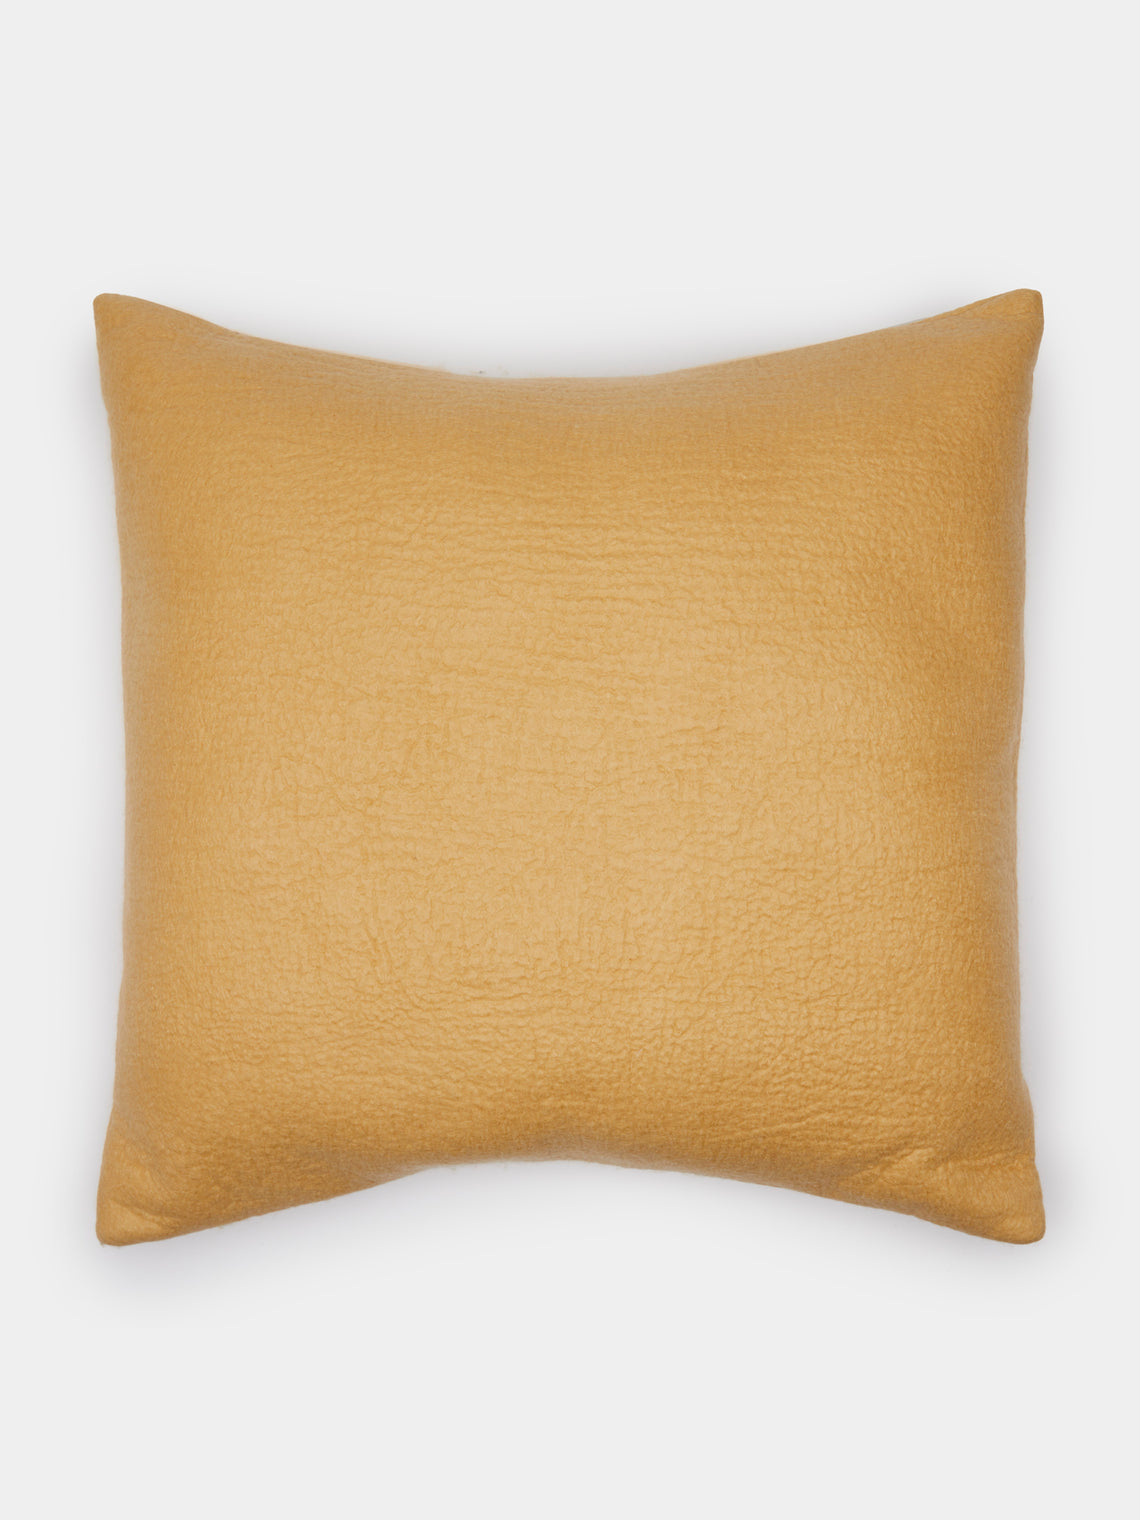 Rose Uniacke - Hand-Dyed Felted Cashmere Large Cushion - Gold - ABASK - 